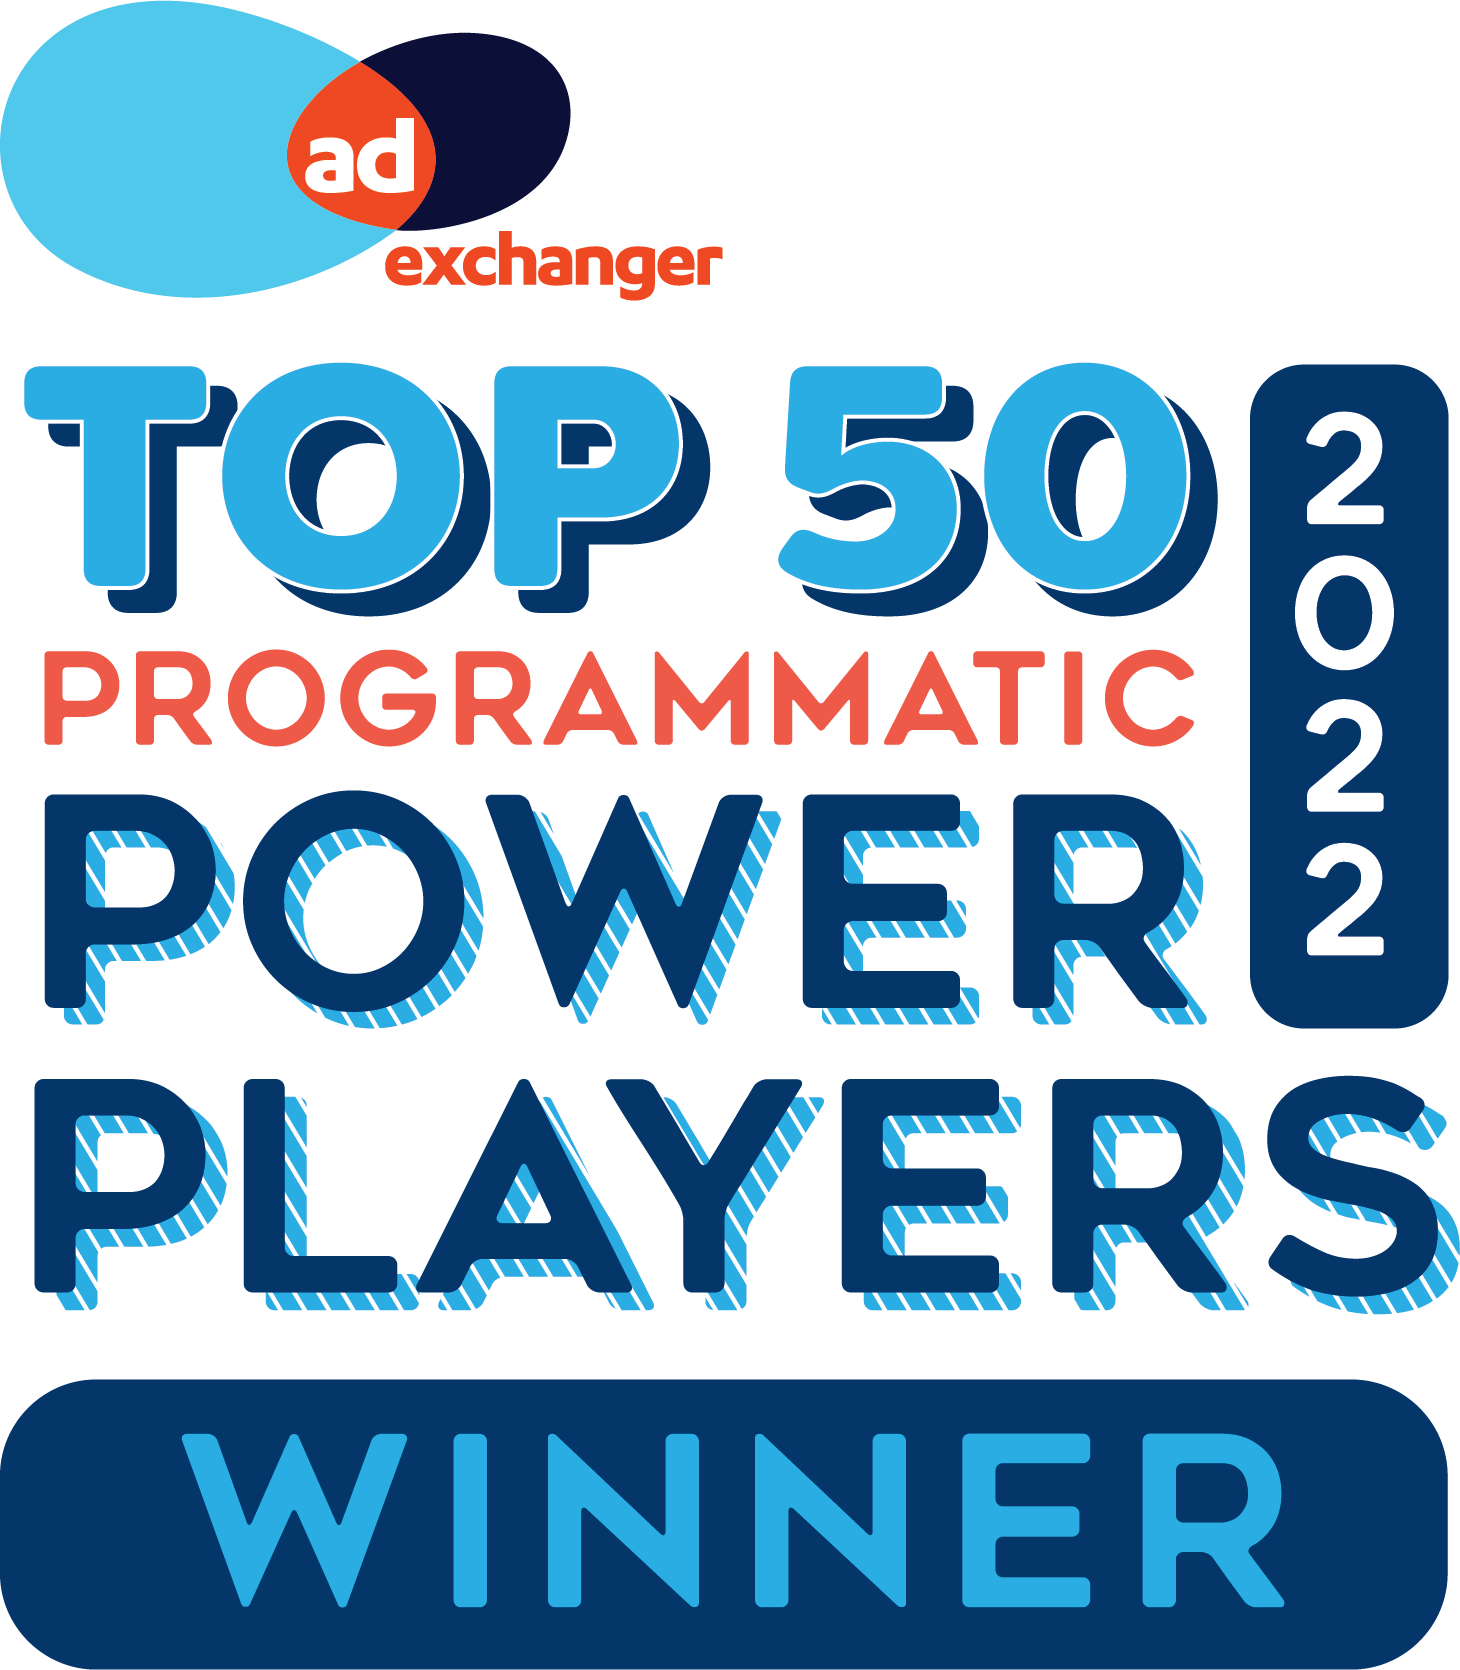 PowerPlayer22-logo_winner_stacked